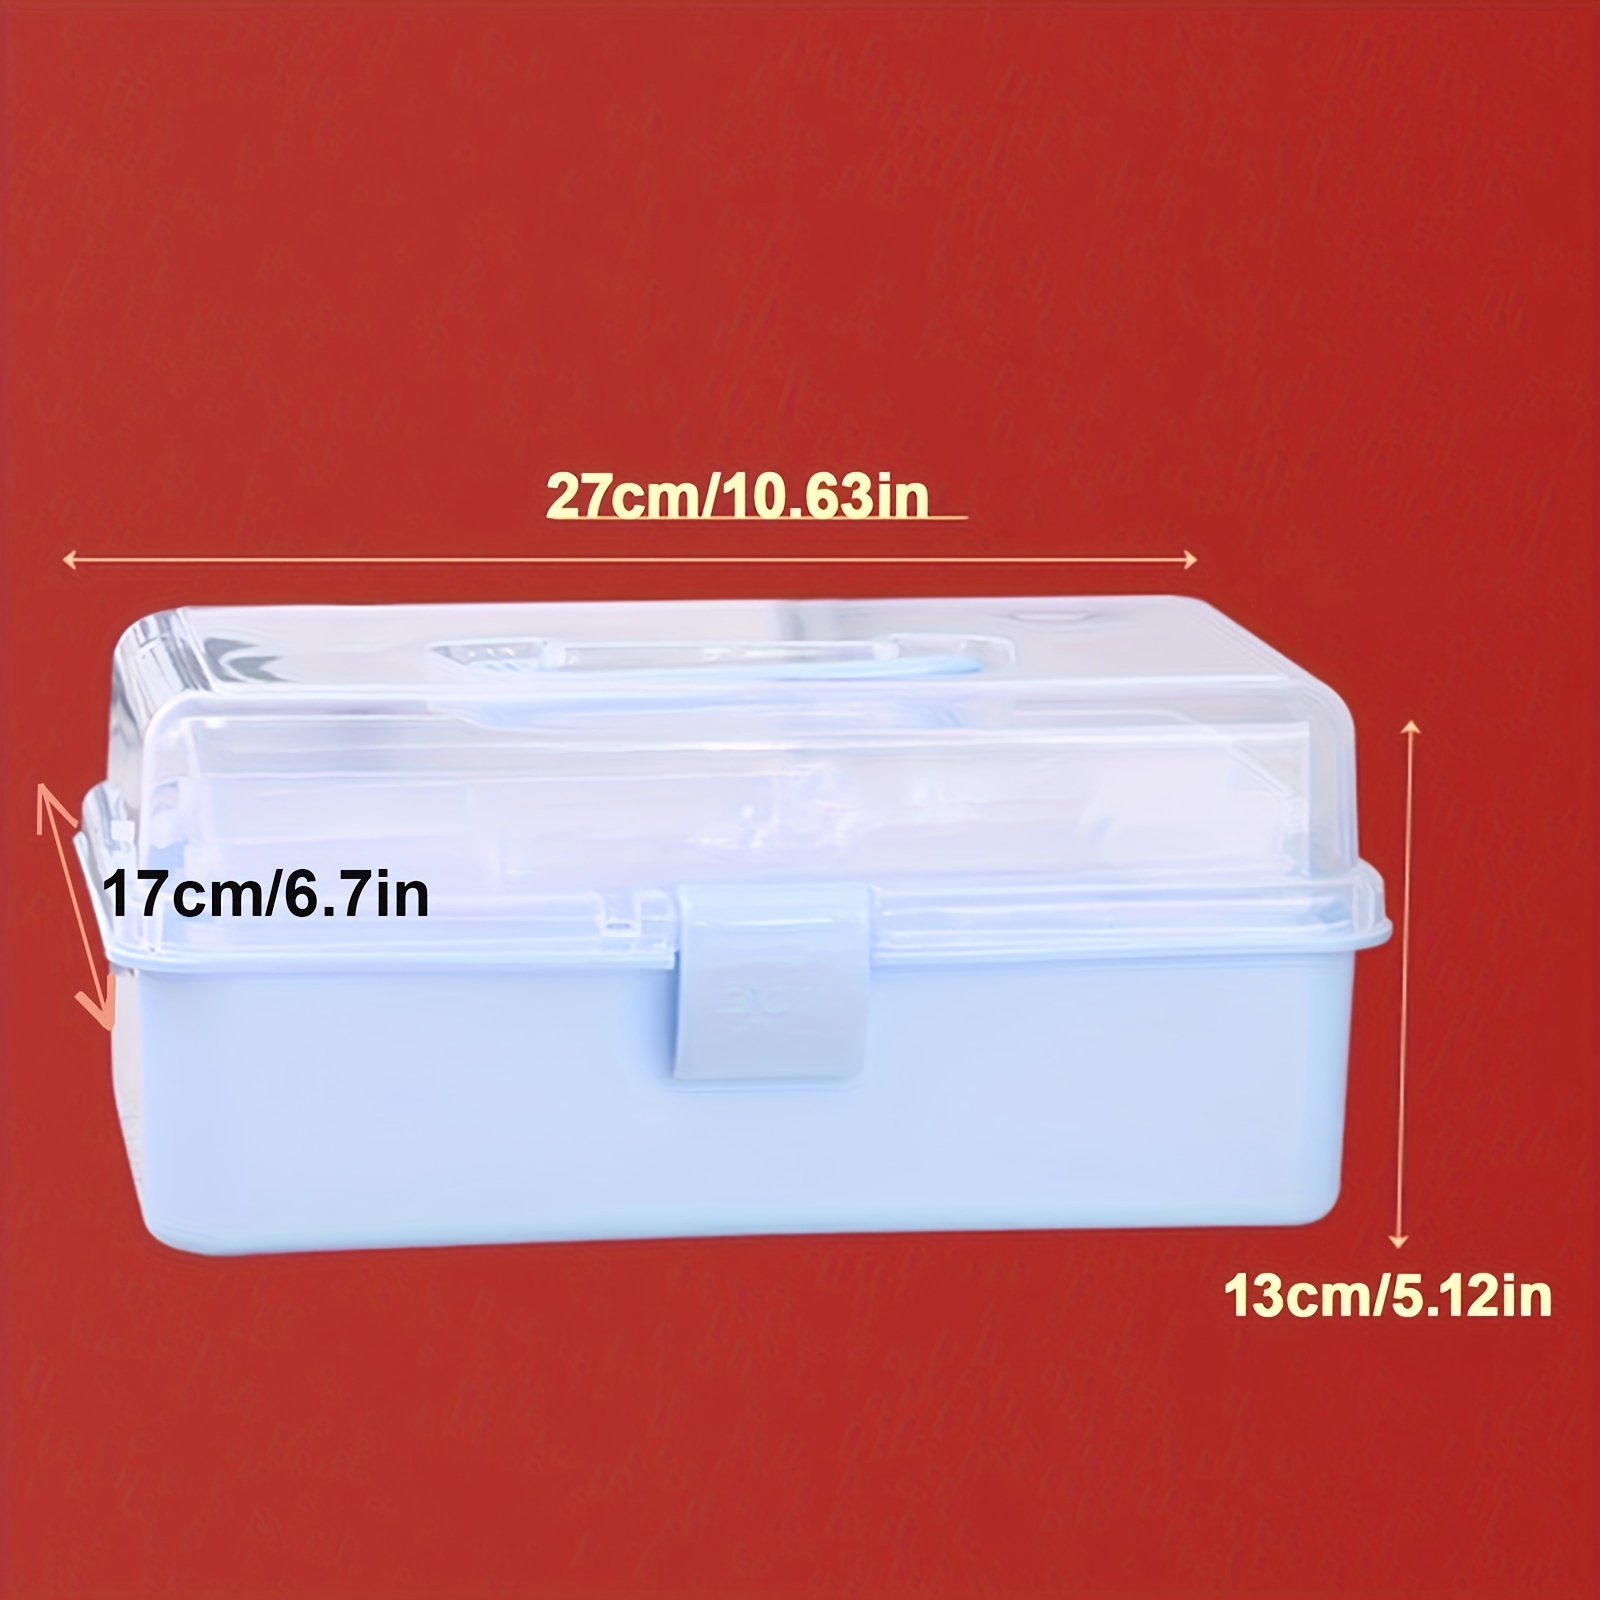  Qeirudu 15 recipientes de almacenamiento pequeños de plástico  transparente, cajas organizadoras de cuentas con tapas con bisagras para  cuentas, joyas y suministros de manualidades (2.17 x 2.17 x 0.79 pulgadas)  : Arte y Manualidades